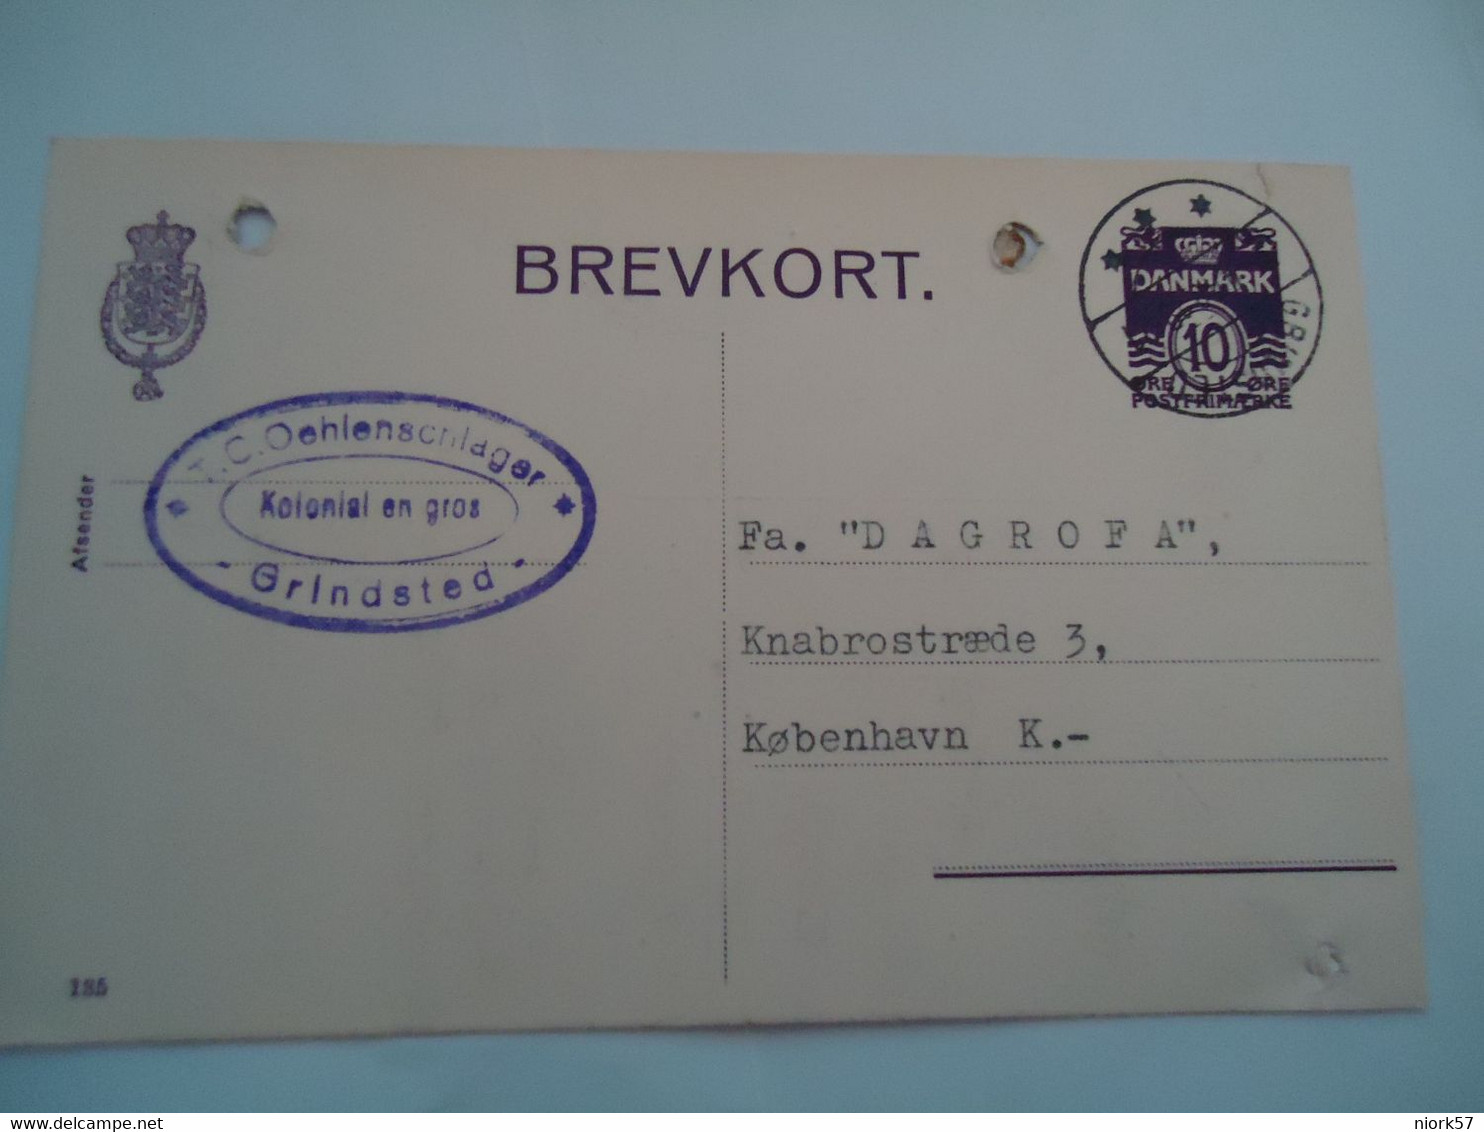 DENMARK BREVKORT  1940  GRINDSTED  2 SCAN - Cartes-maximum (CM)